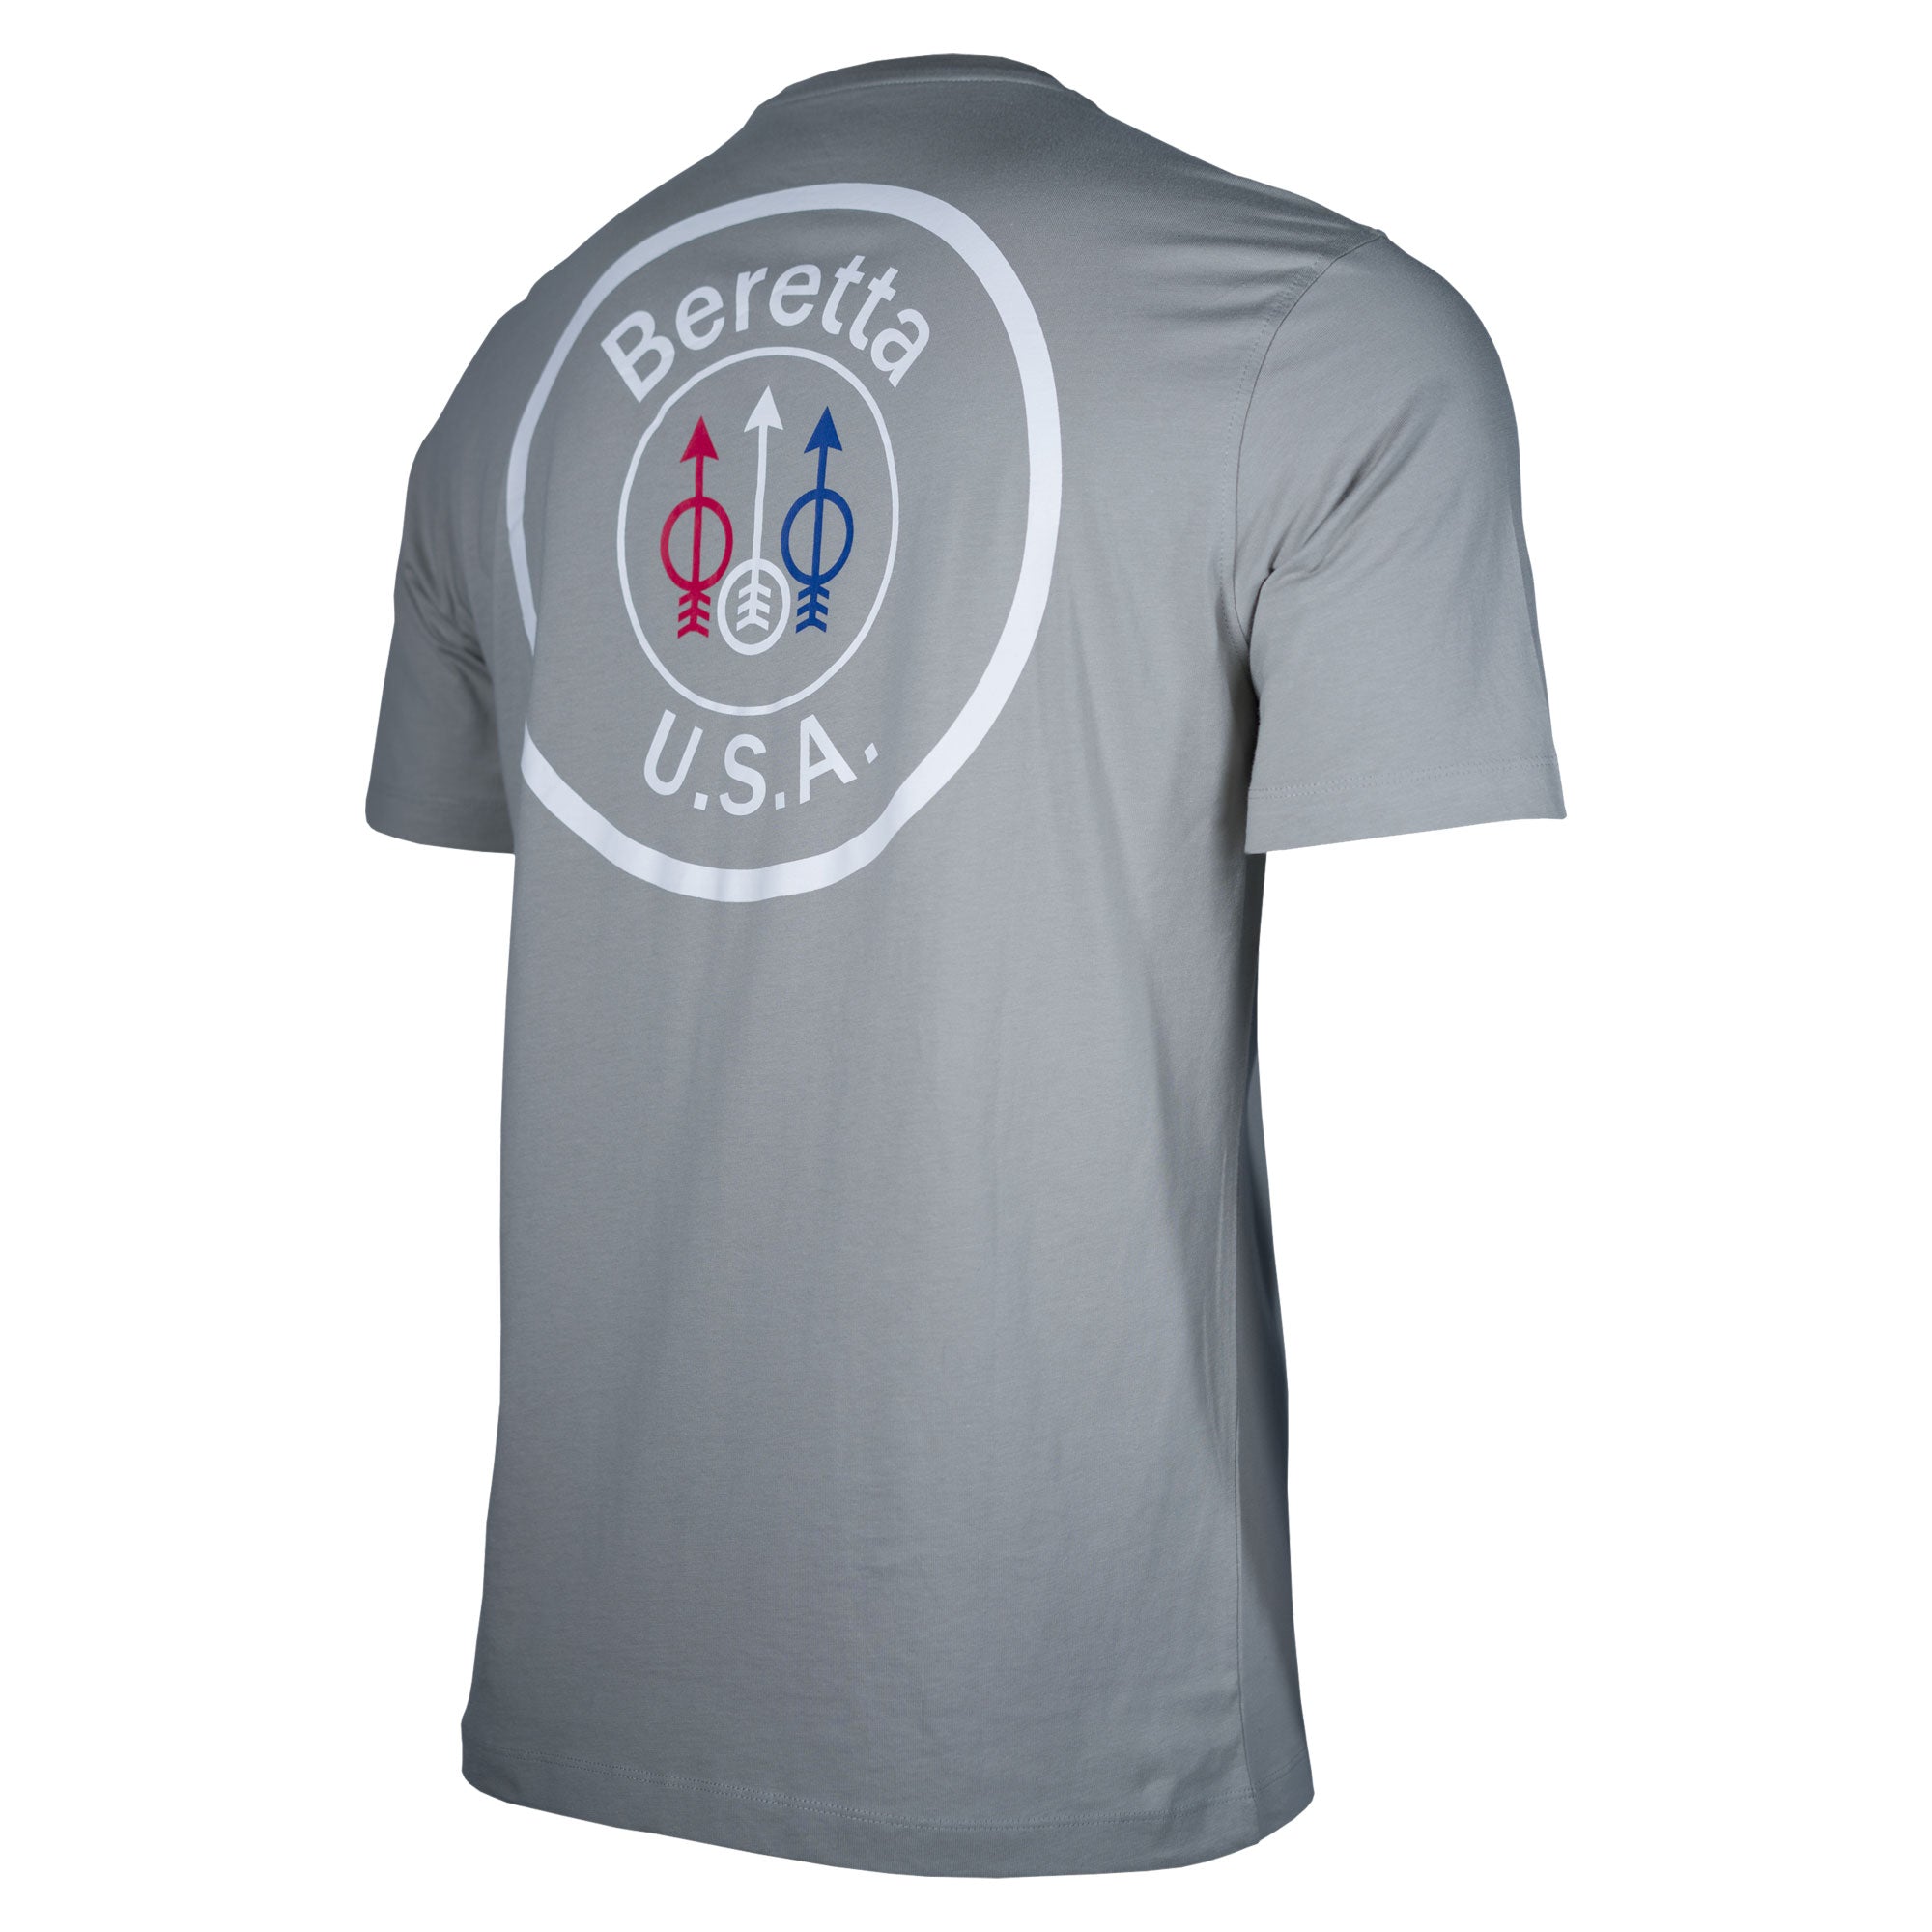 Beretta USA Logo Short Sleeve T-Shirt TS252T1416